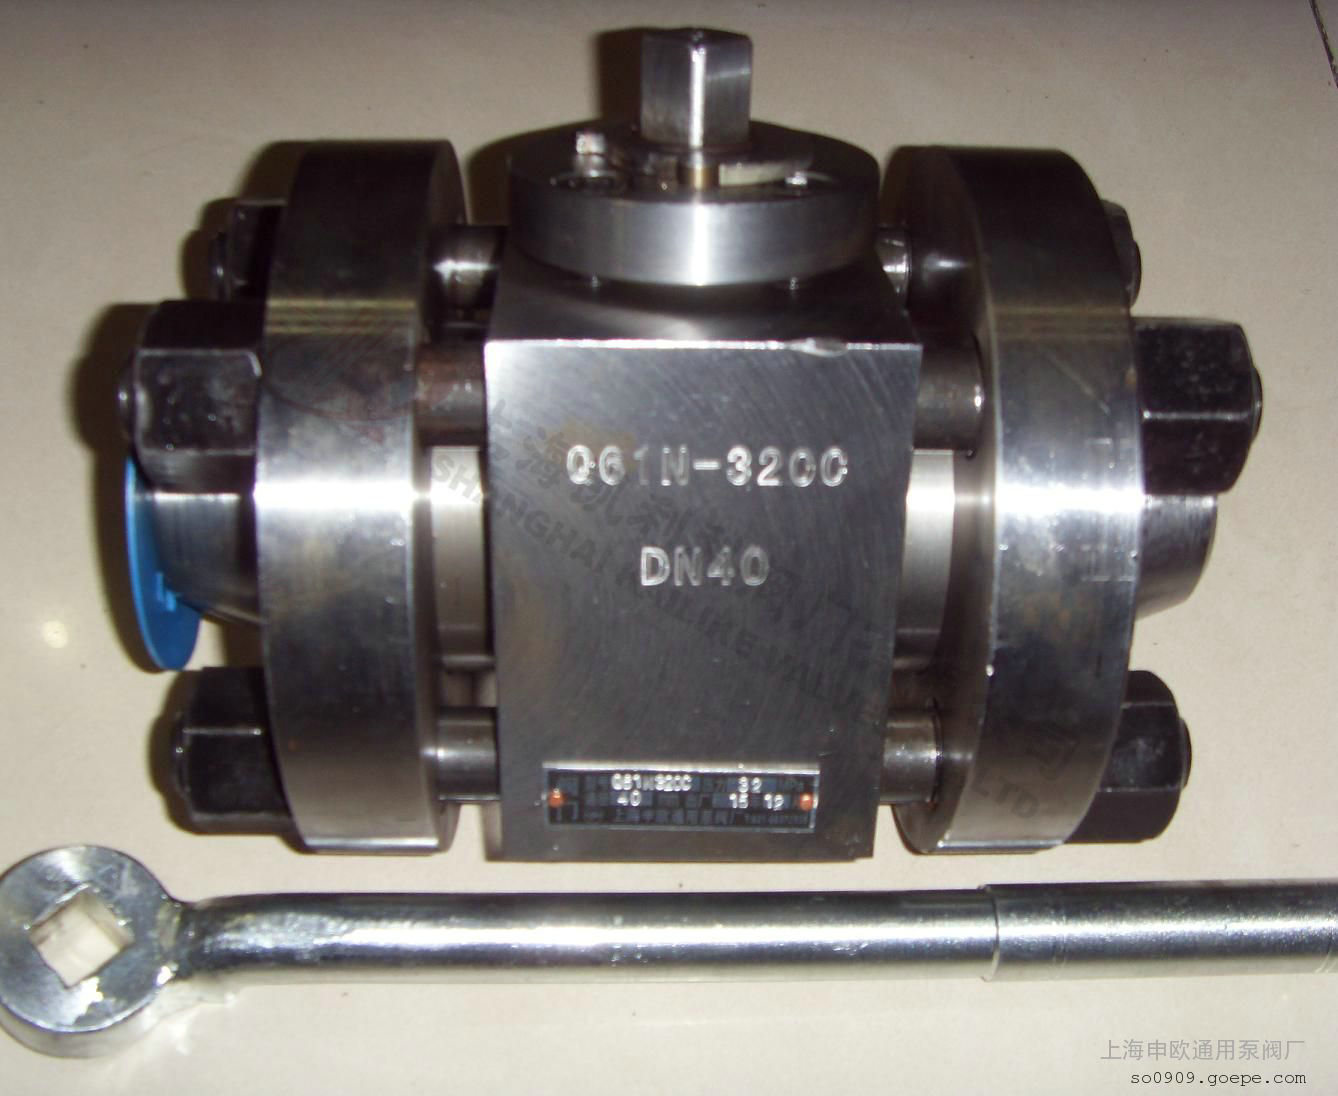 Q61N-160,320高压焊接球阀